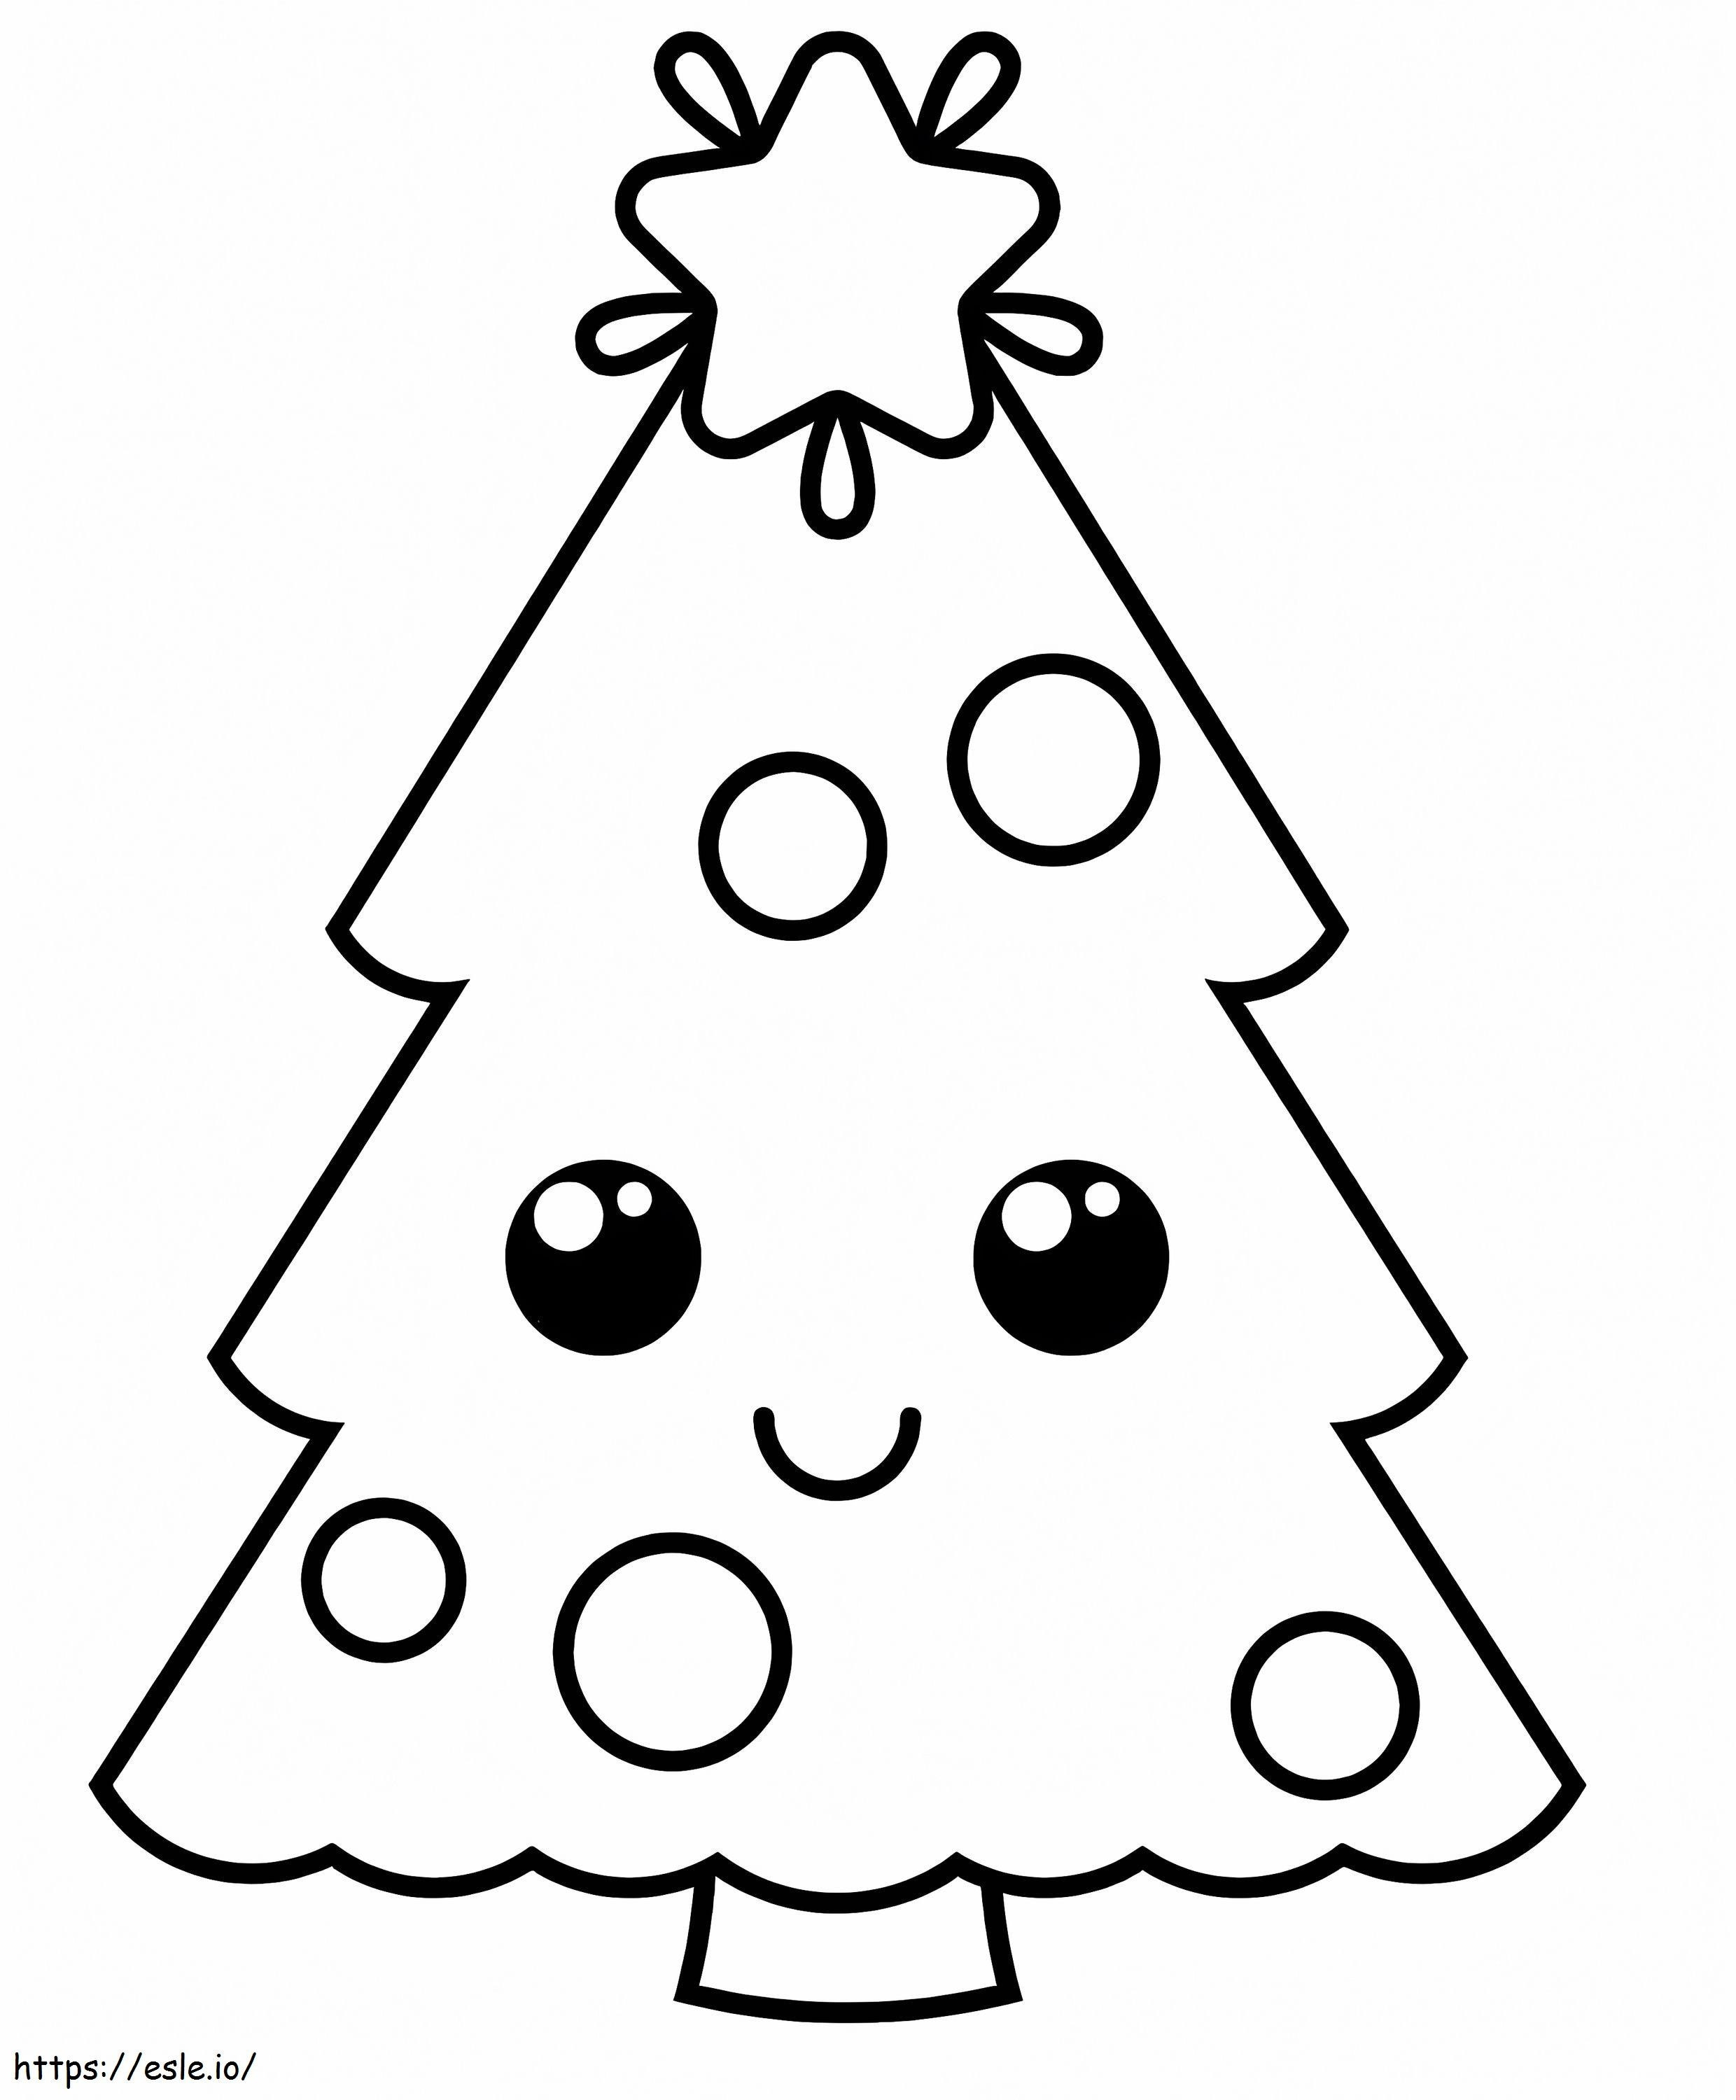 lindo, sonriente, árbol de navidad para colorear